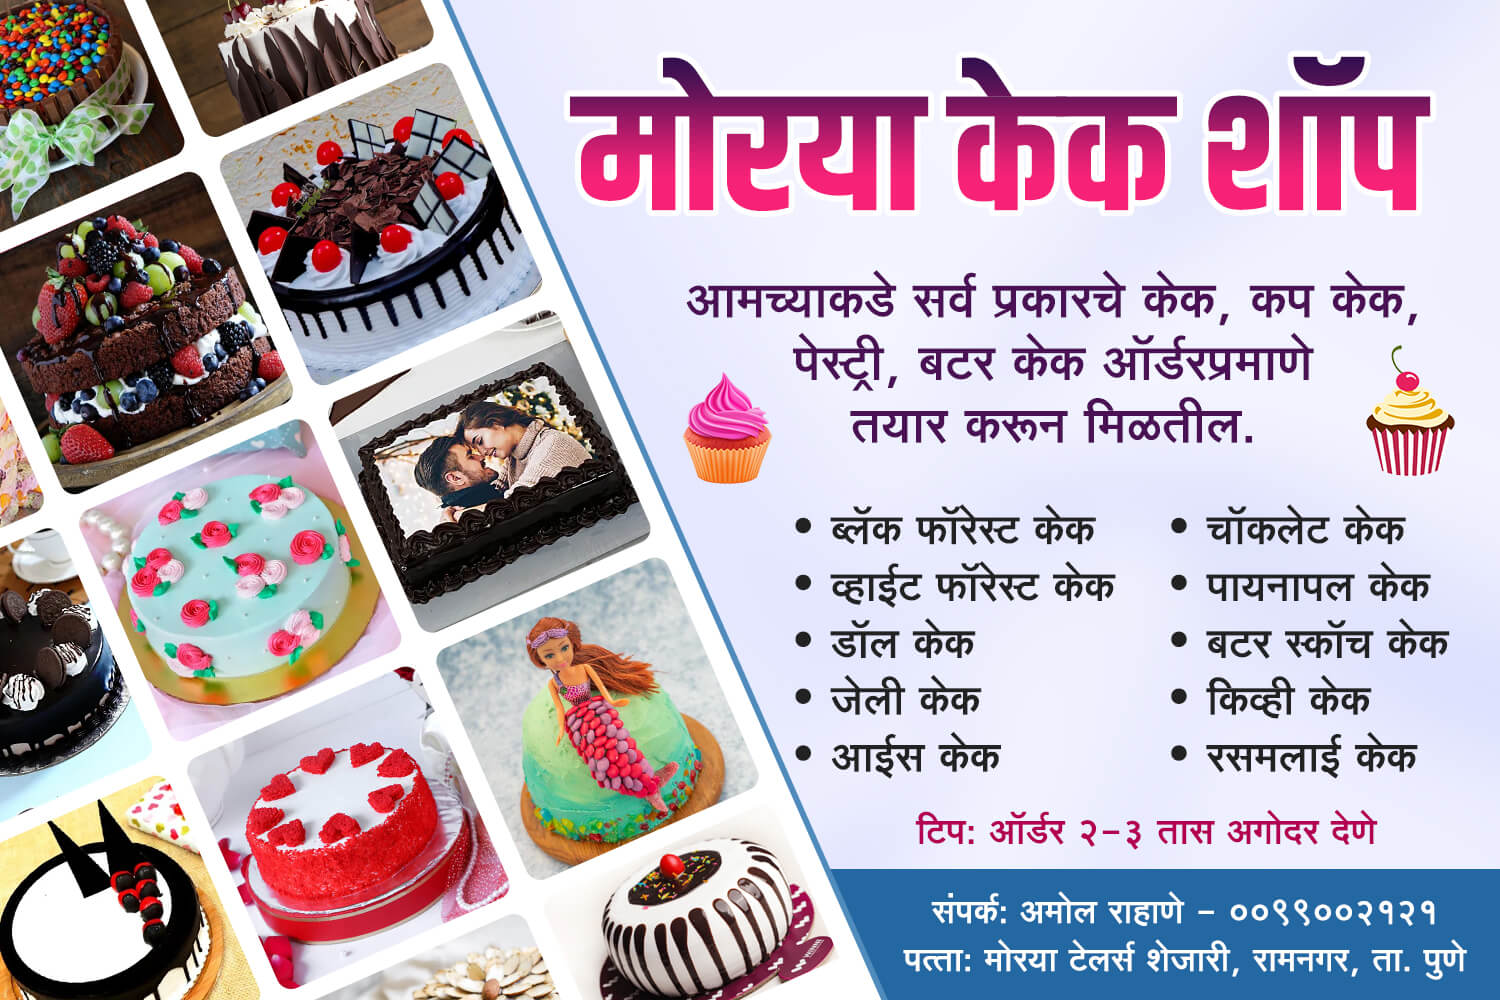 Morya cake shop flex | Cake flex marathi